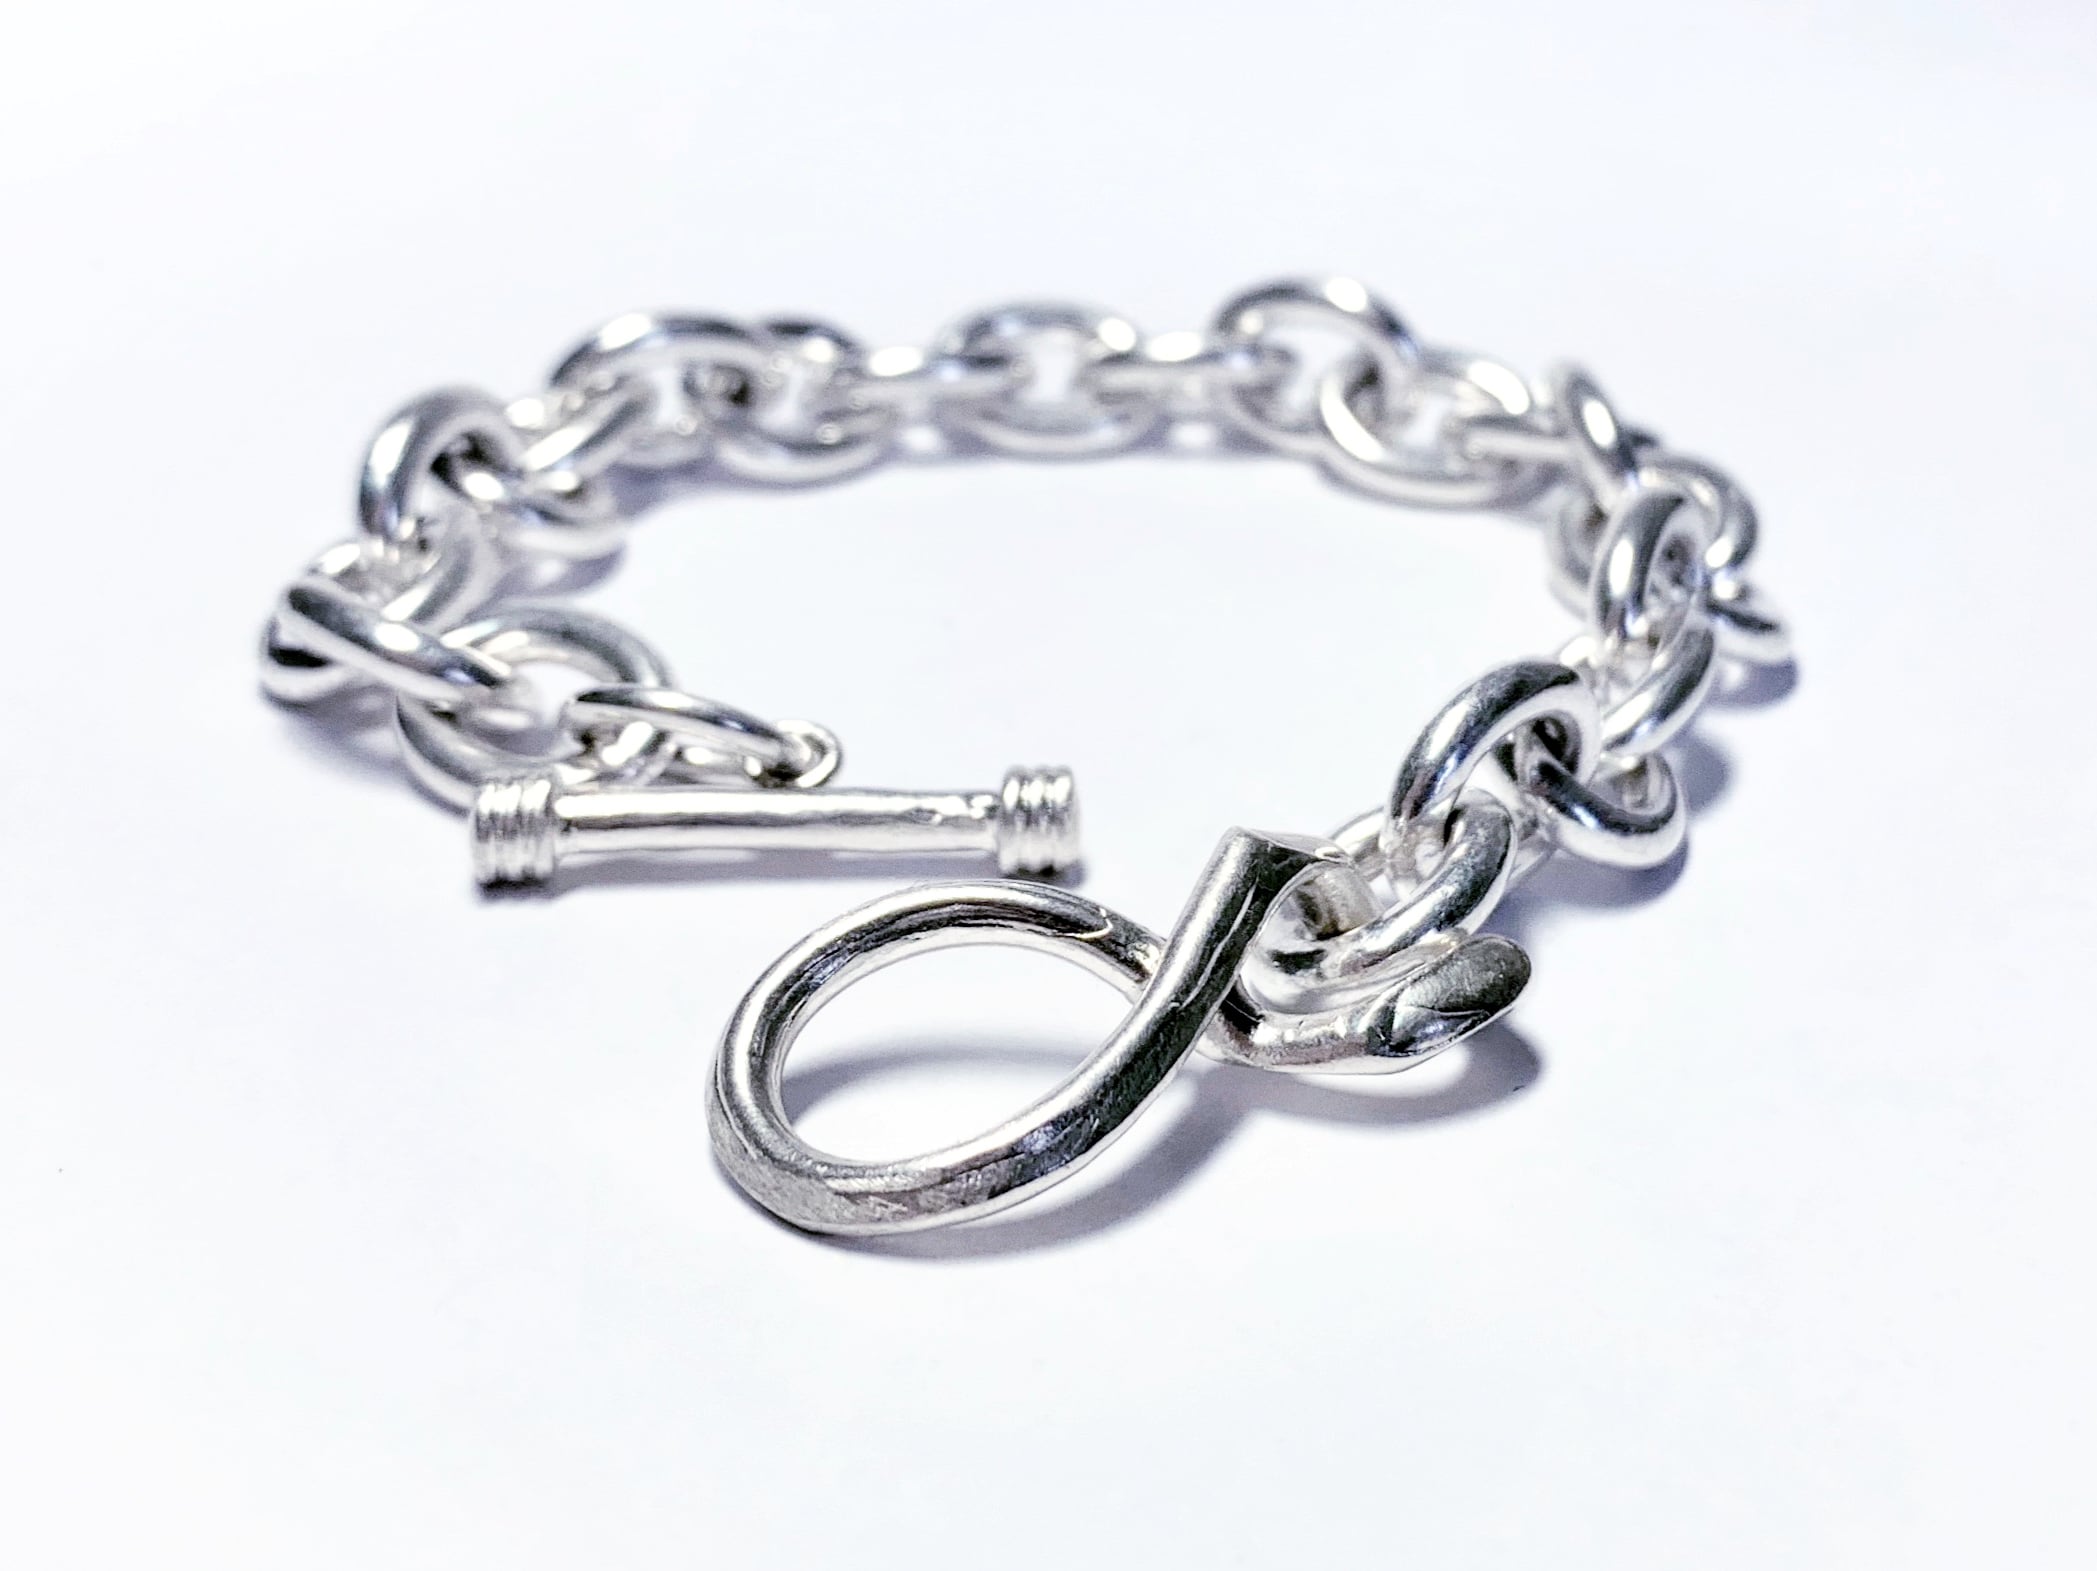 meian sterling silver 925  bracelet